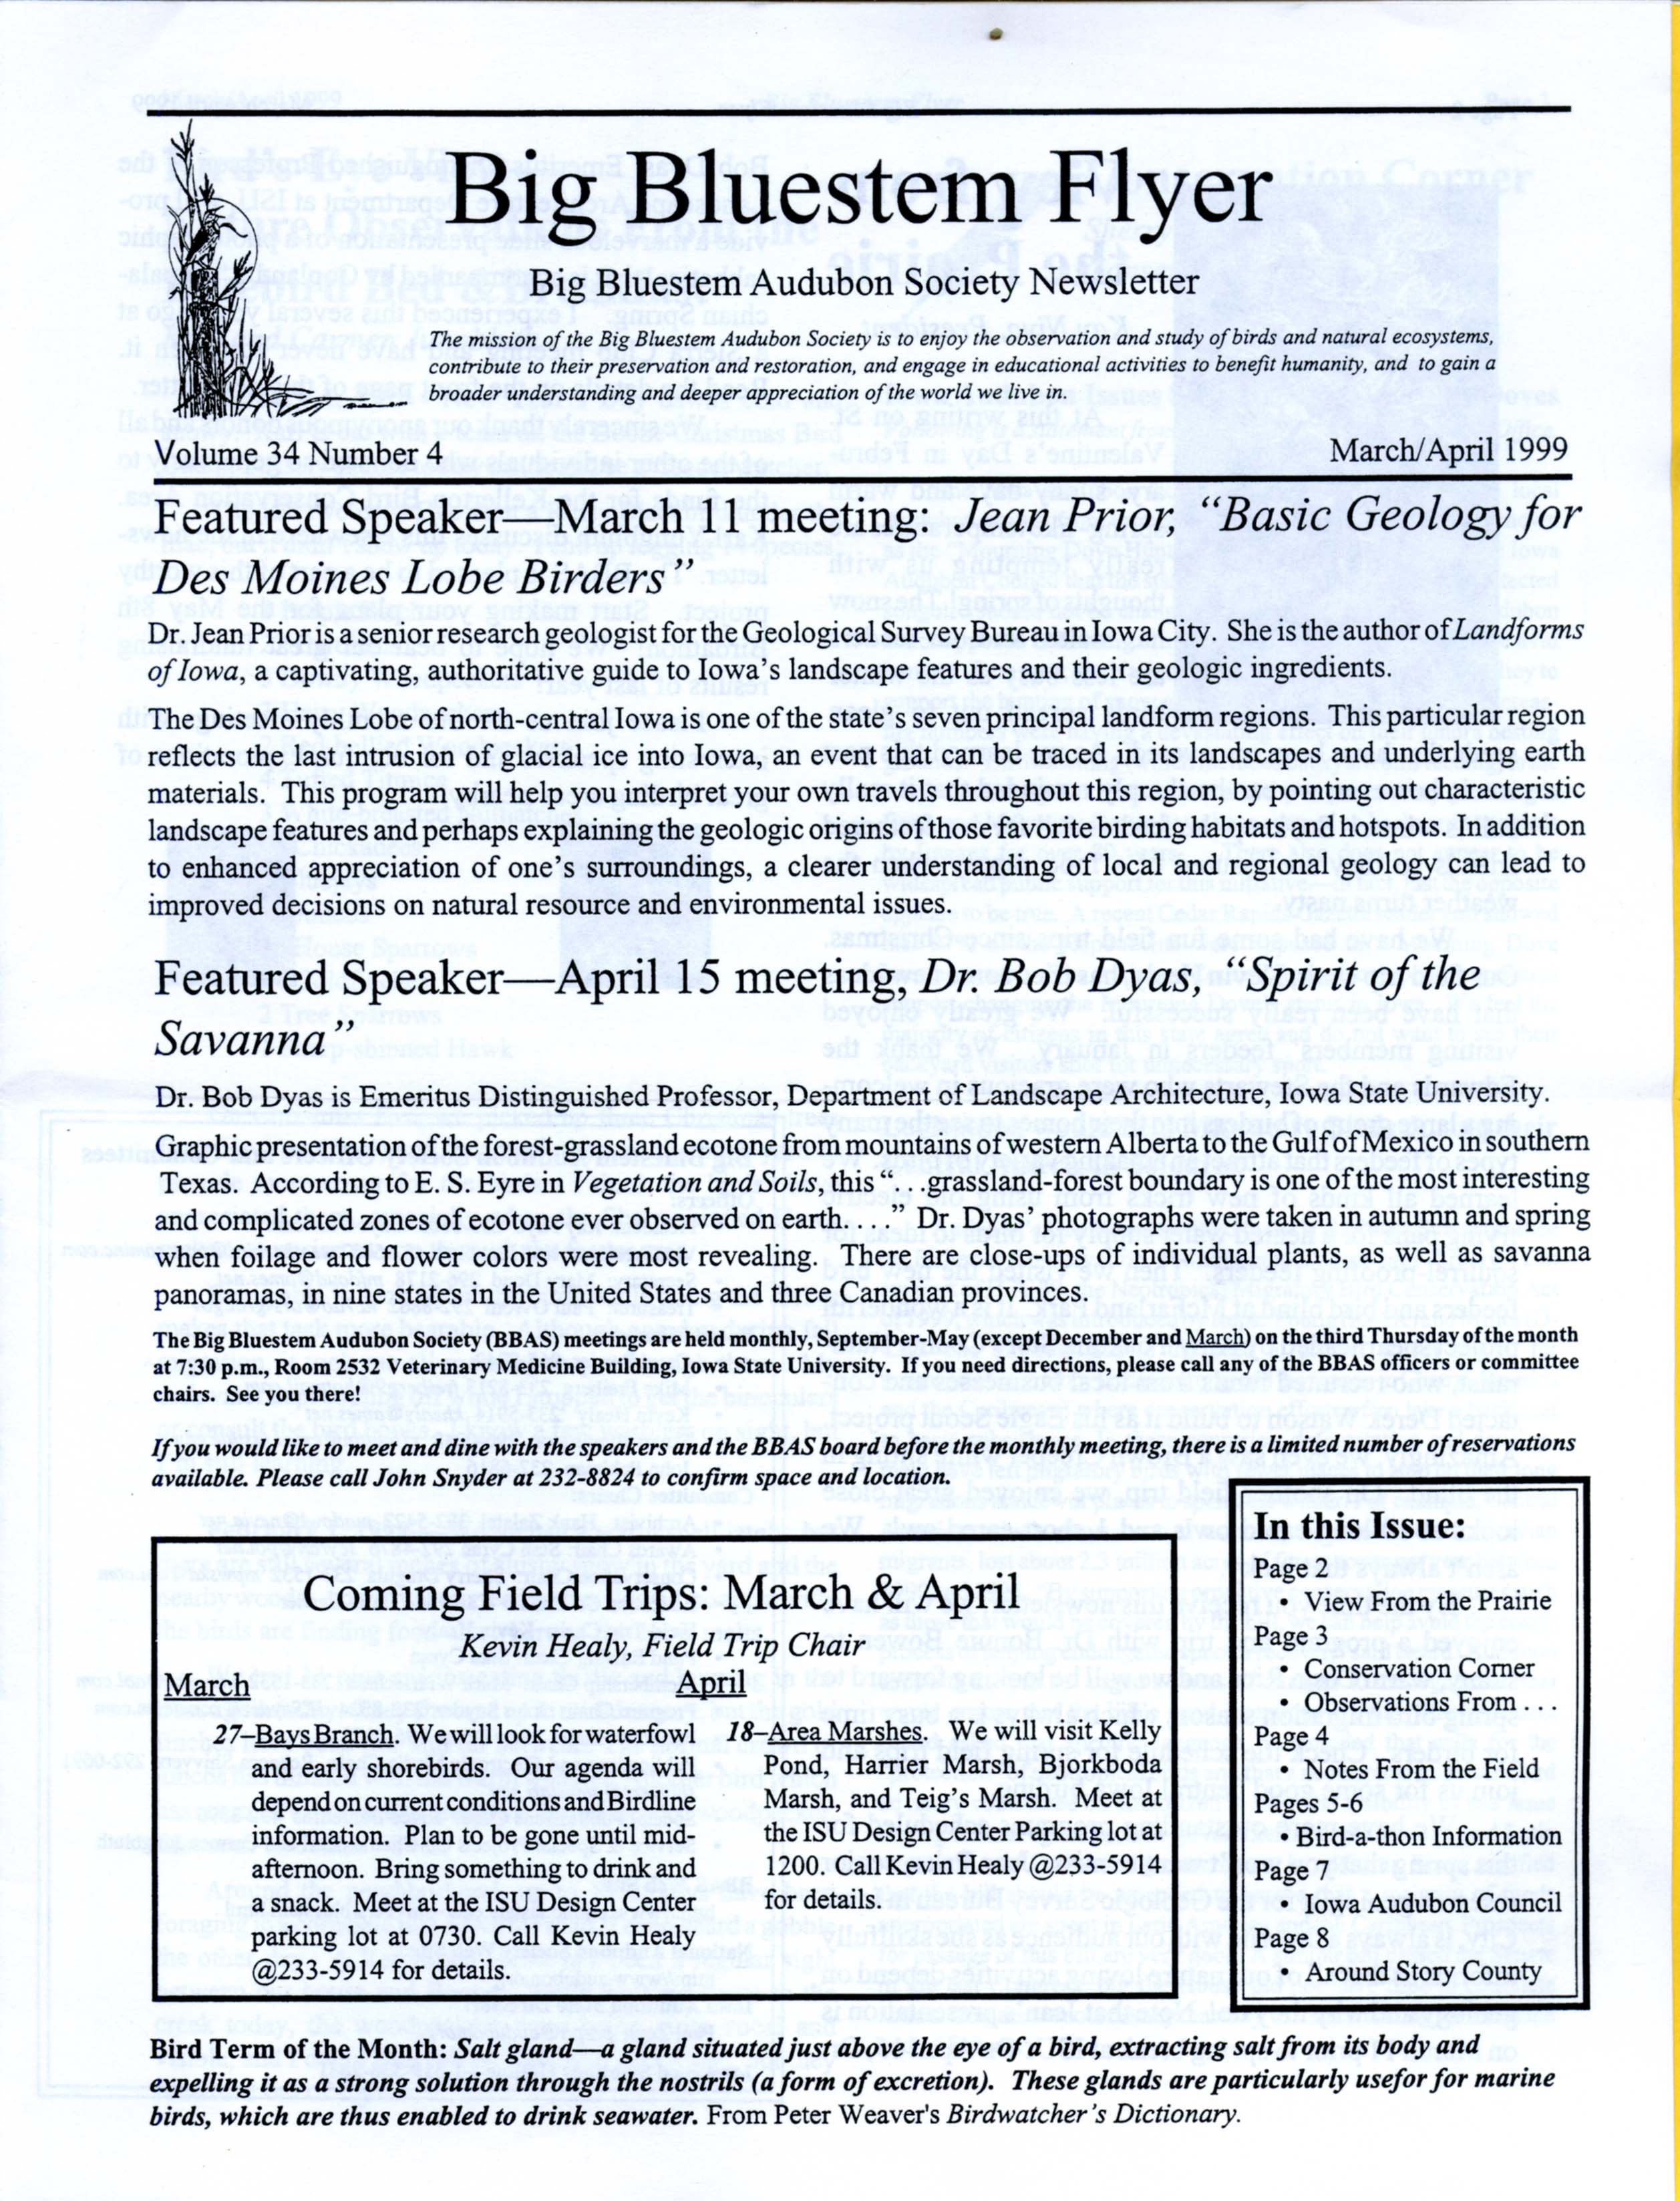 Big Bluestem Flyer, Volume 34, Number 4, March/April 1999